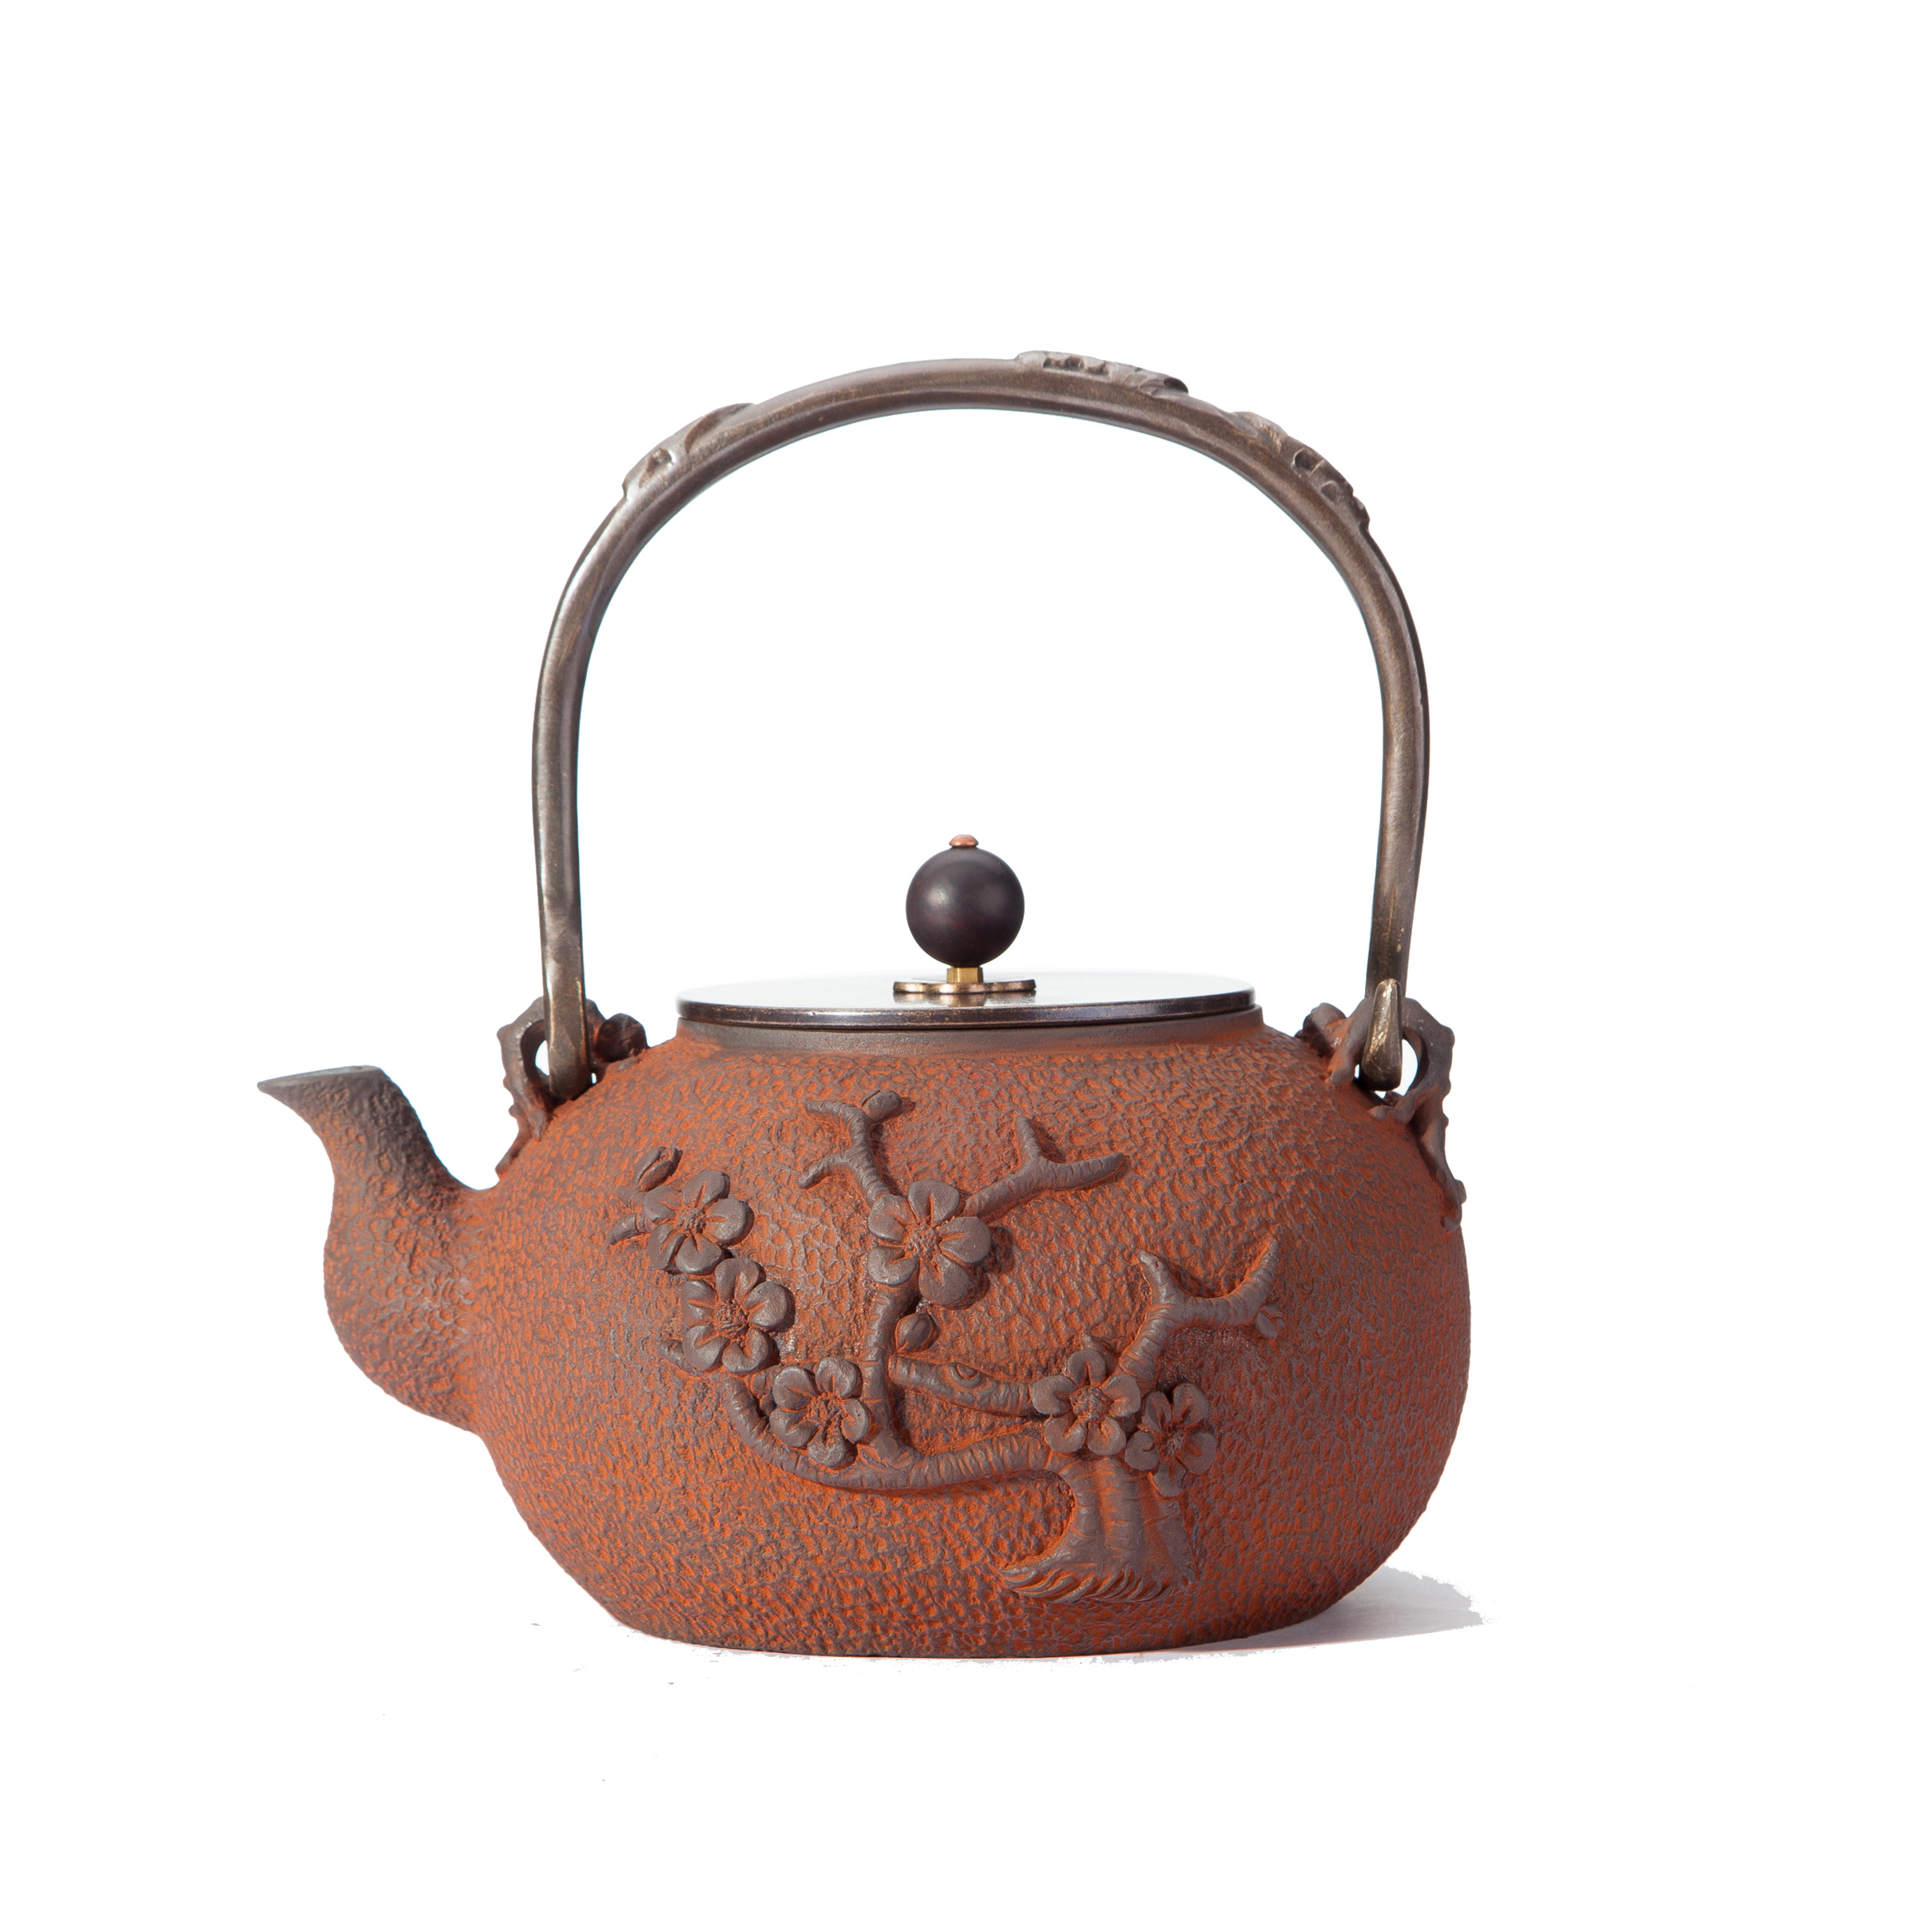 传统茶壶吉春堂铁壶梅树（锈色）手工铁铸茶壶1.2L铁茶壶煮水茶具 吉 春 堂 梅树锈色铁壶